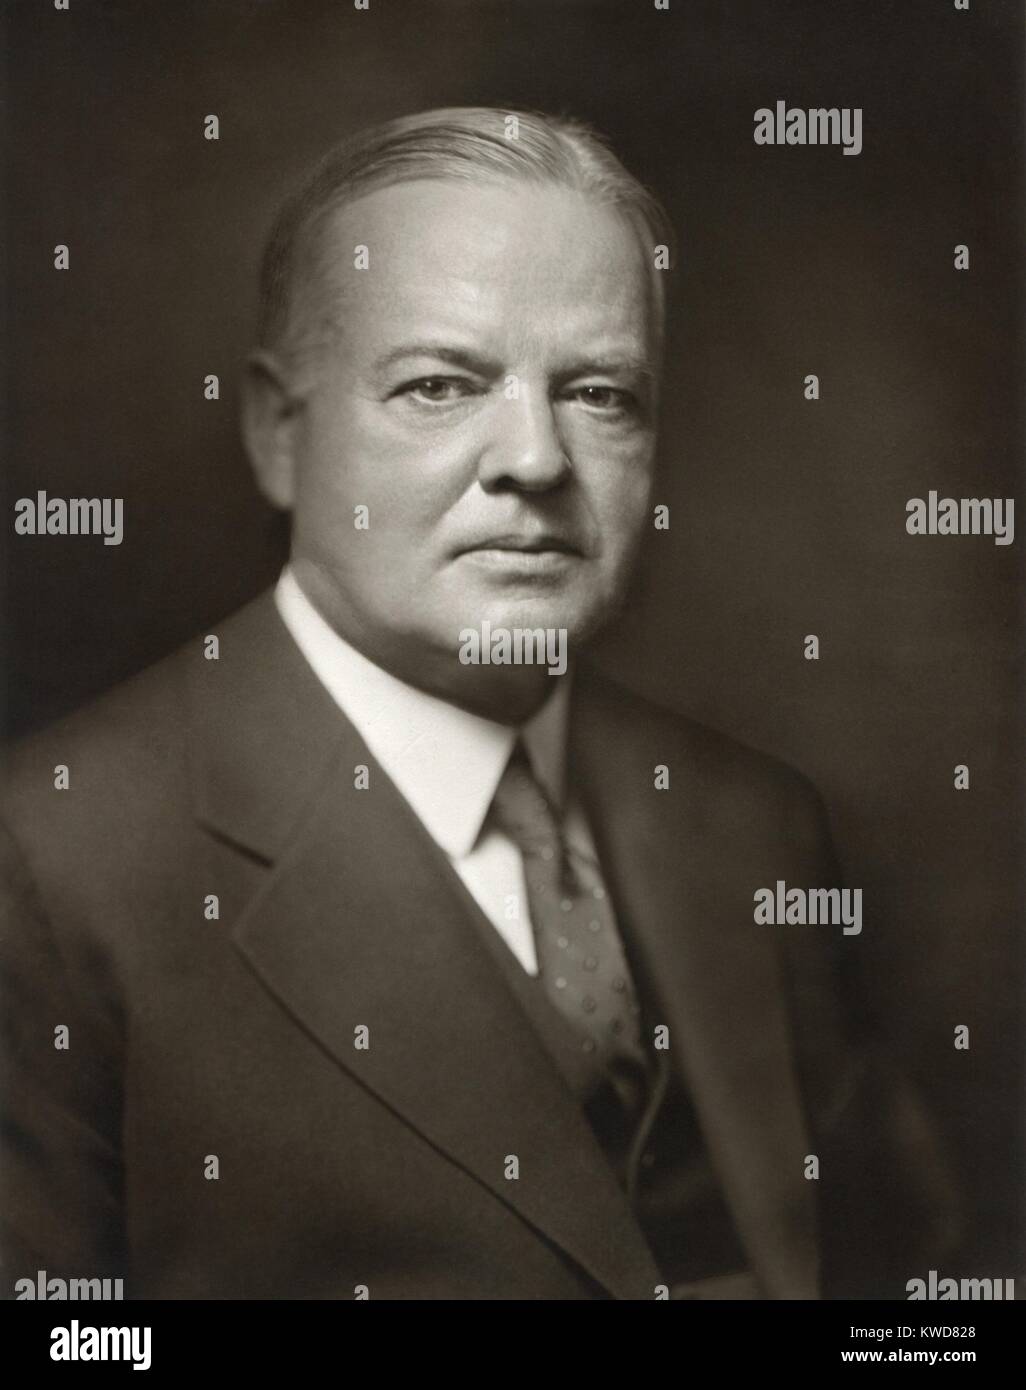 Herbert Hoover ritratto da notare fotografo Bachrach. Foto eventualmente adottate nel 1928 o 1929, quando egli era il repubblicano candidato presidenziale o come presidente eletto. (BSLOC 2015 16 44) Foto Stock